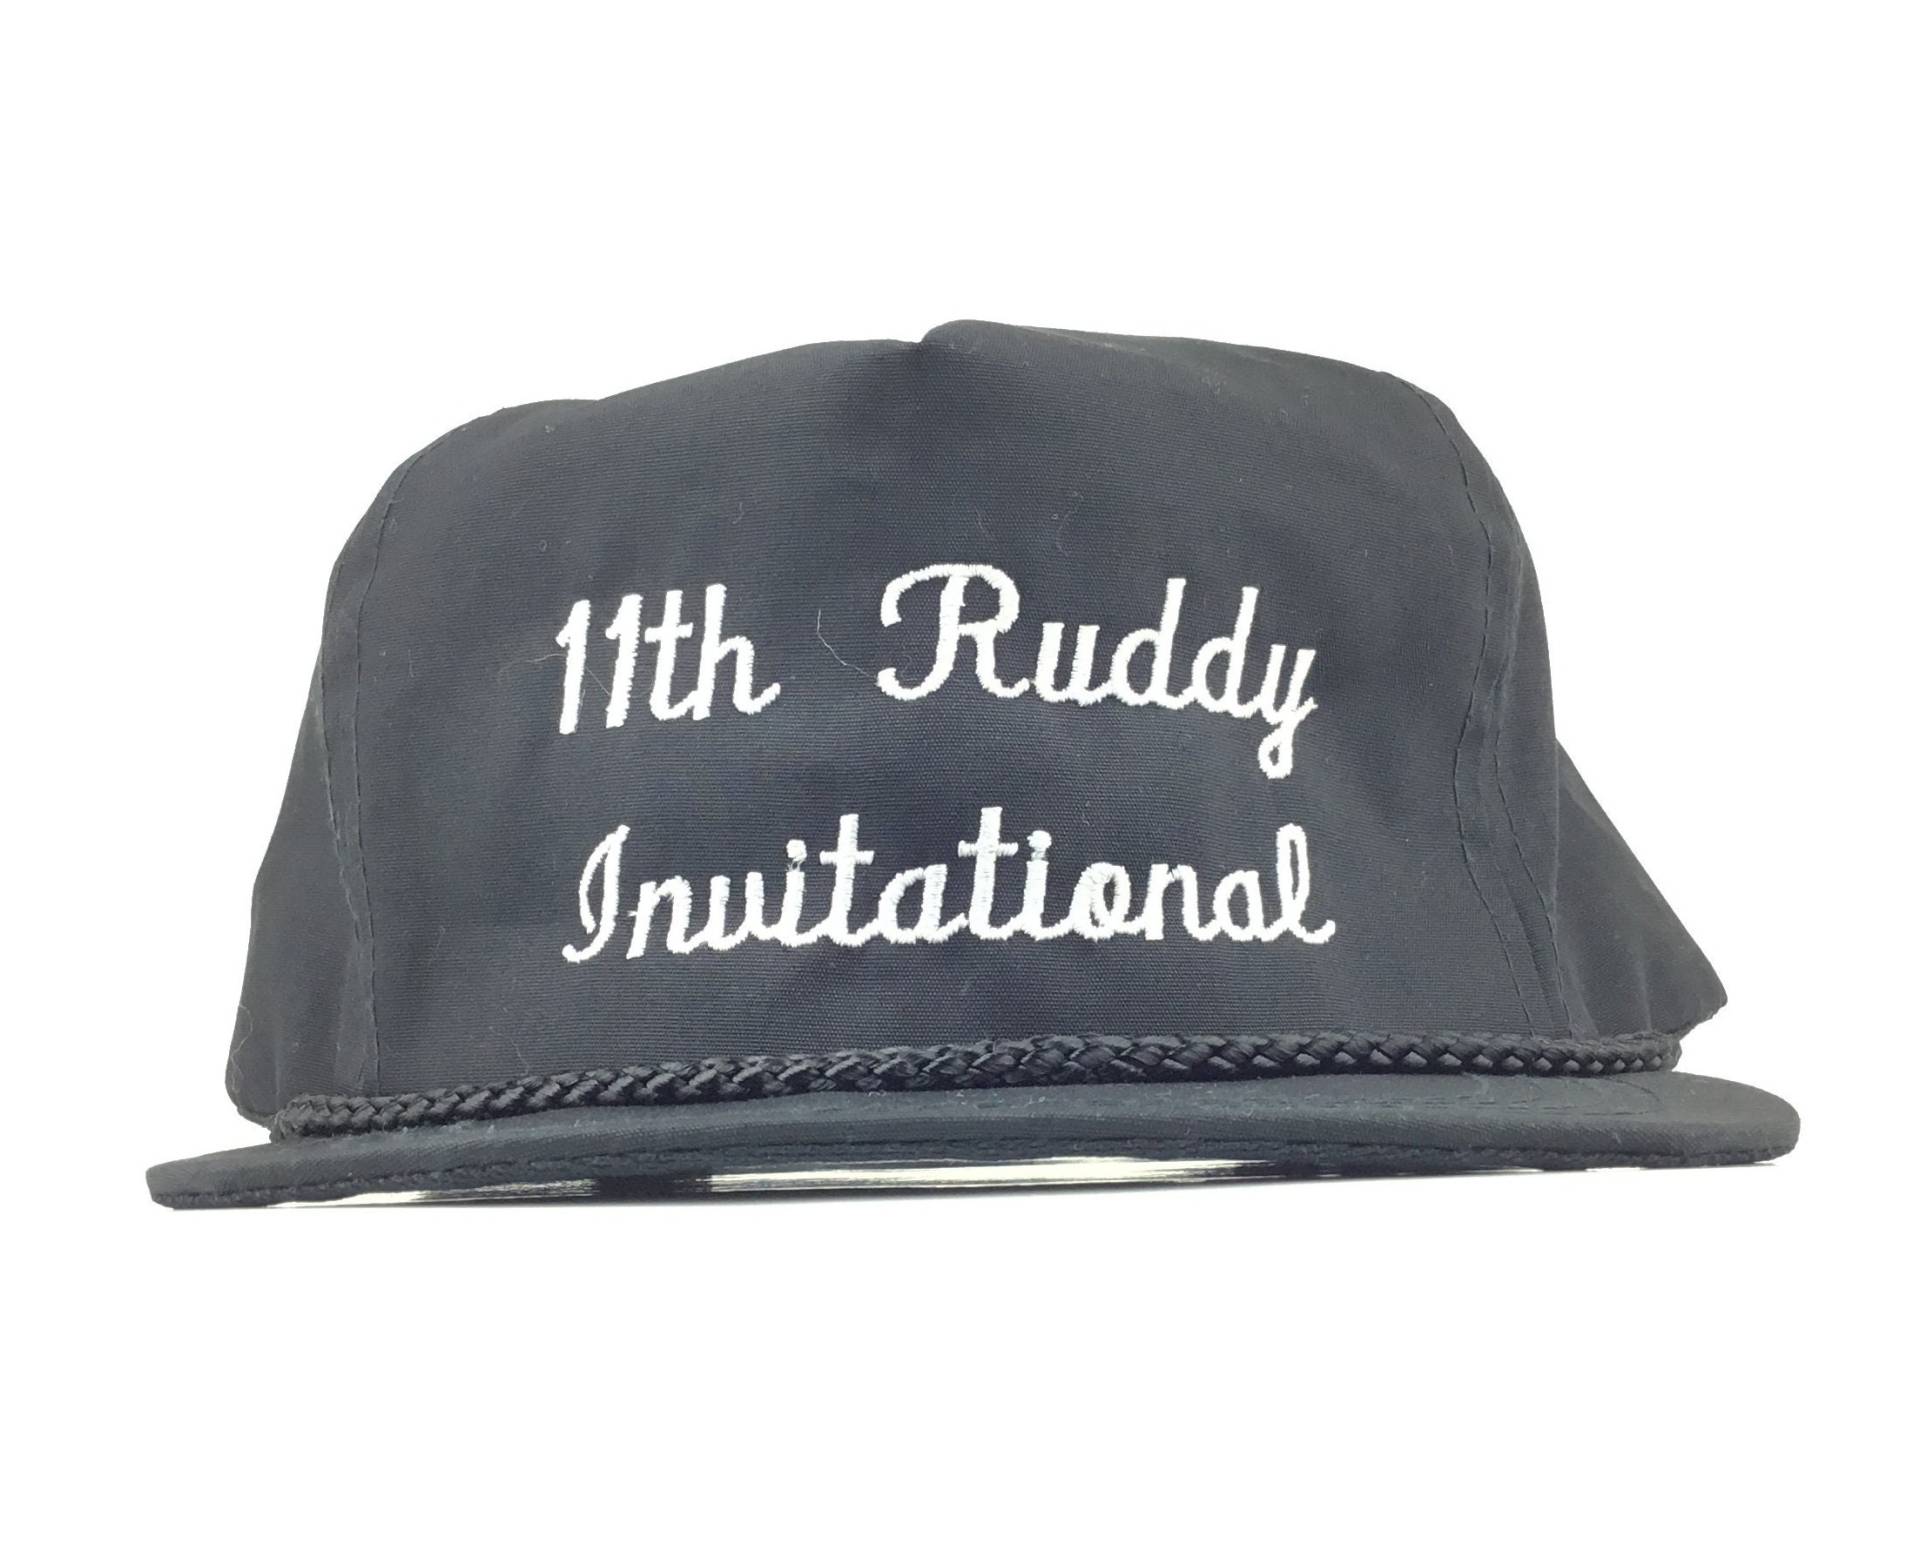 Vintage 1990Er 11. Ruddy Invitational | Turnier Schwarze Baseball Kappe Hut Adj. Mens Size Otto Cap Brand von arm90210